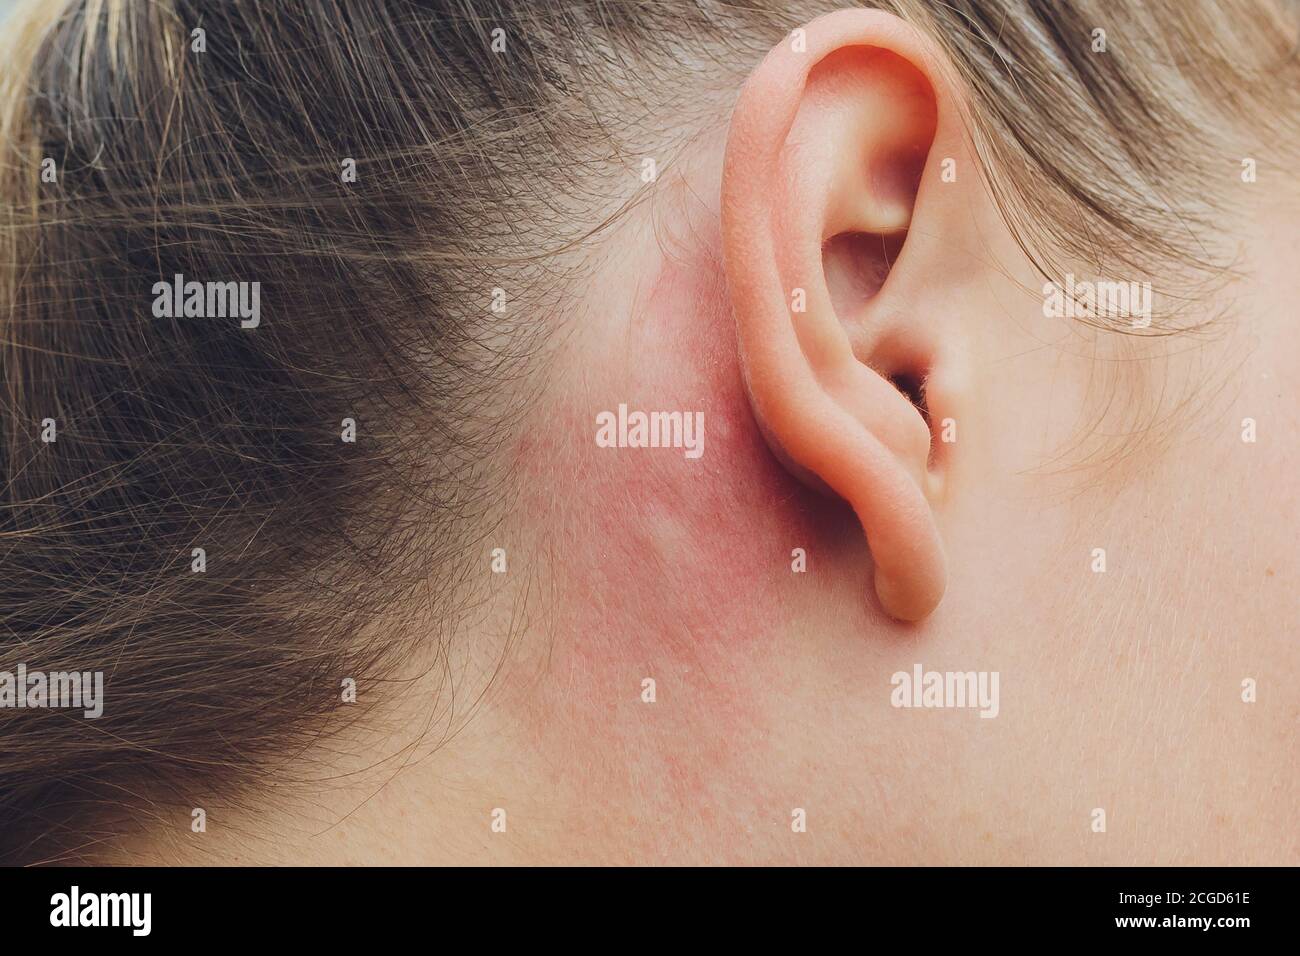 Réaction allergique de la peau sur l'homme derrière l'oreille ...